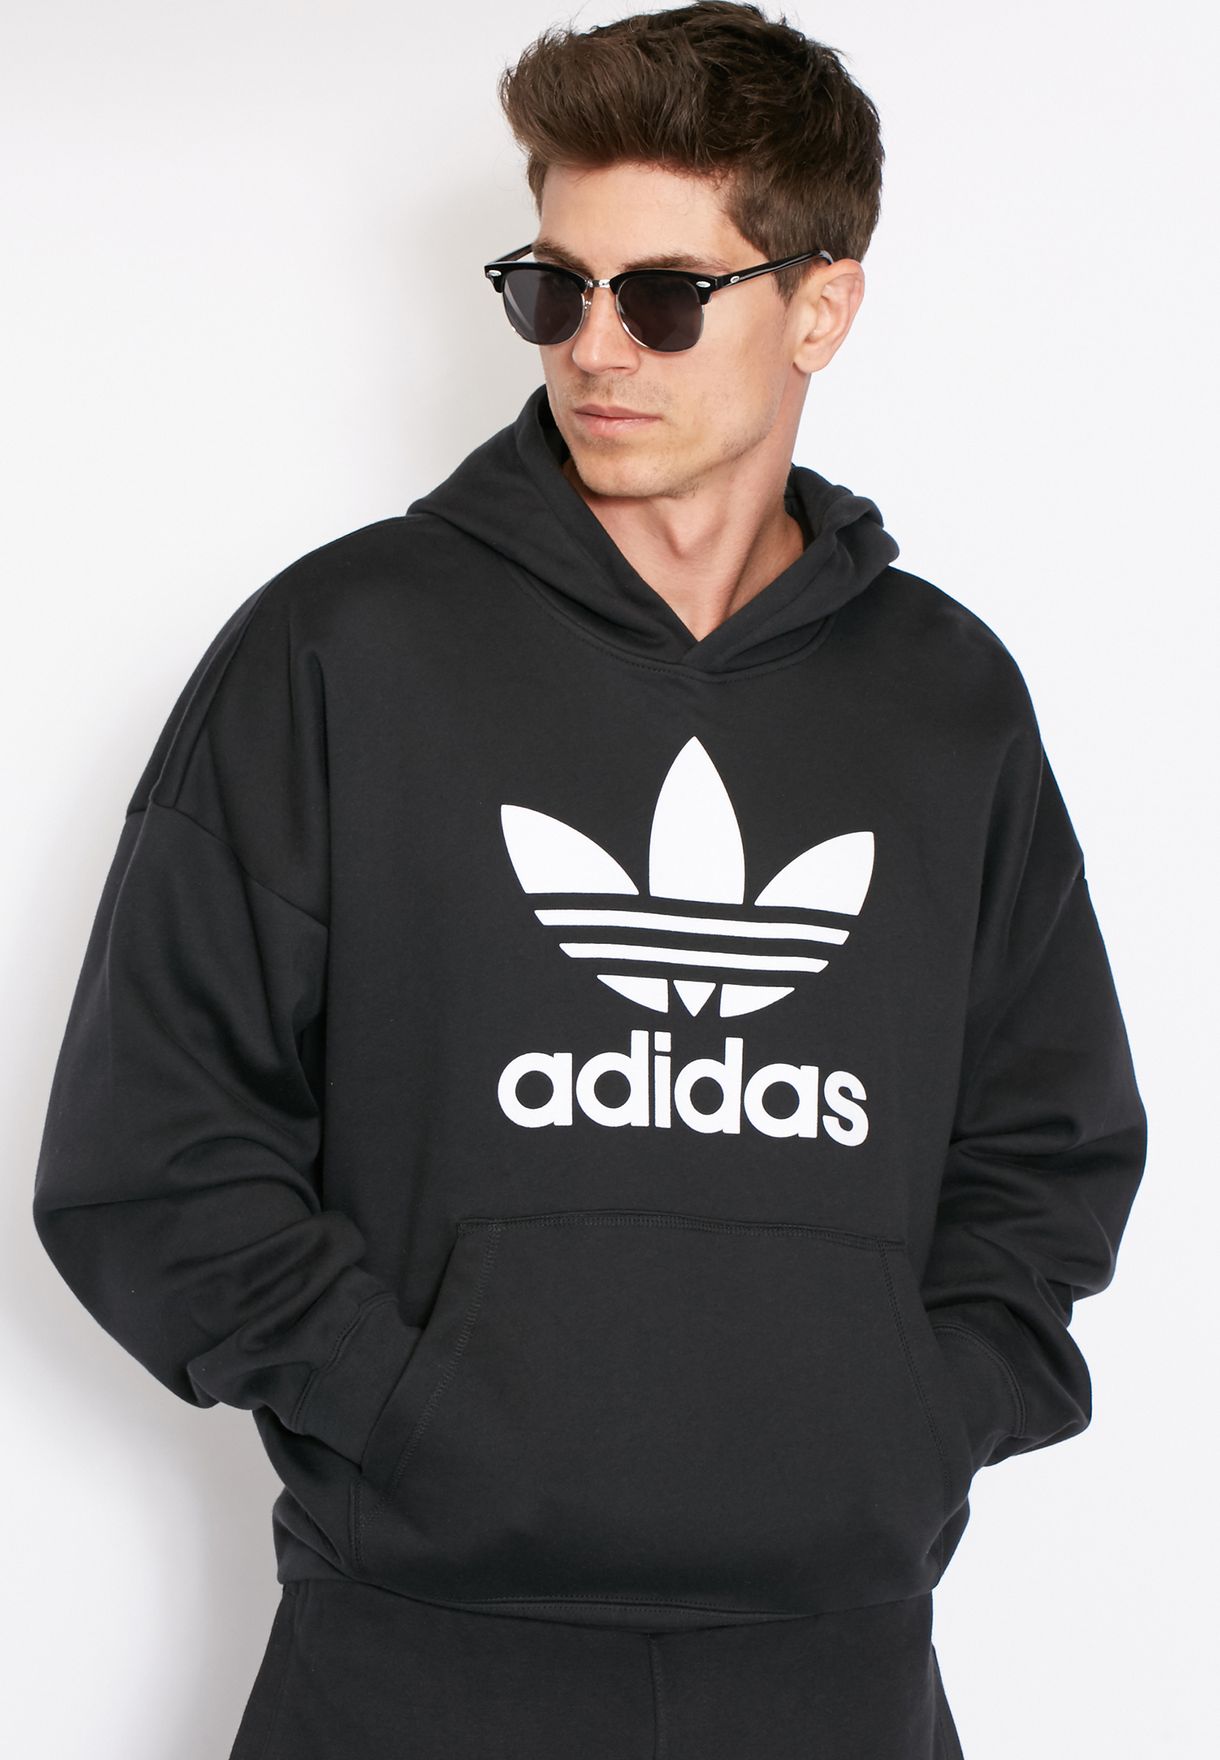 adidas adc fashion hoodie